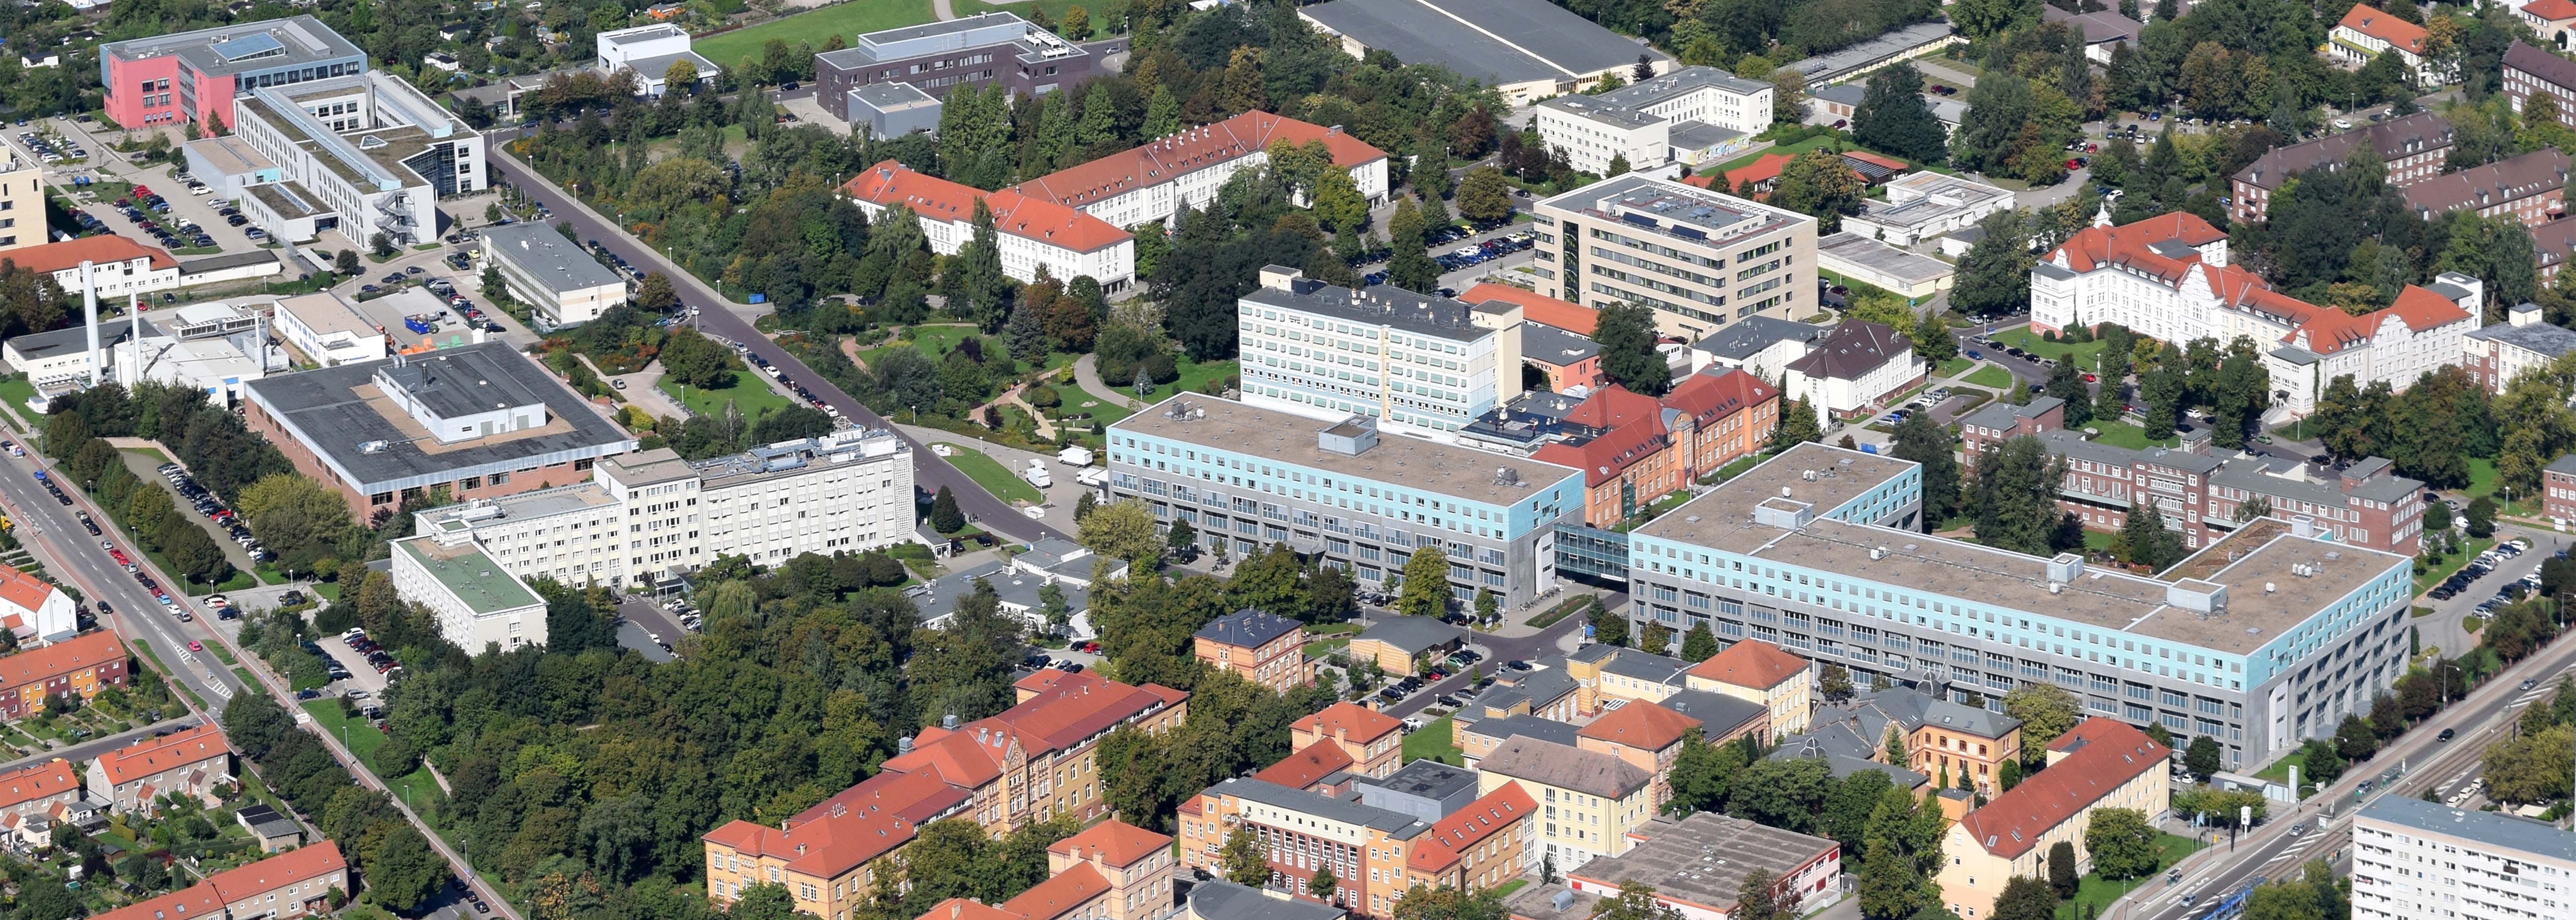 Luftbild Campus